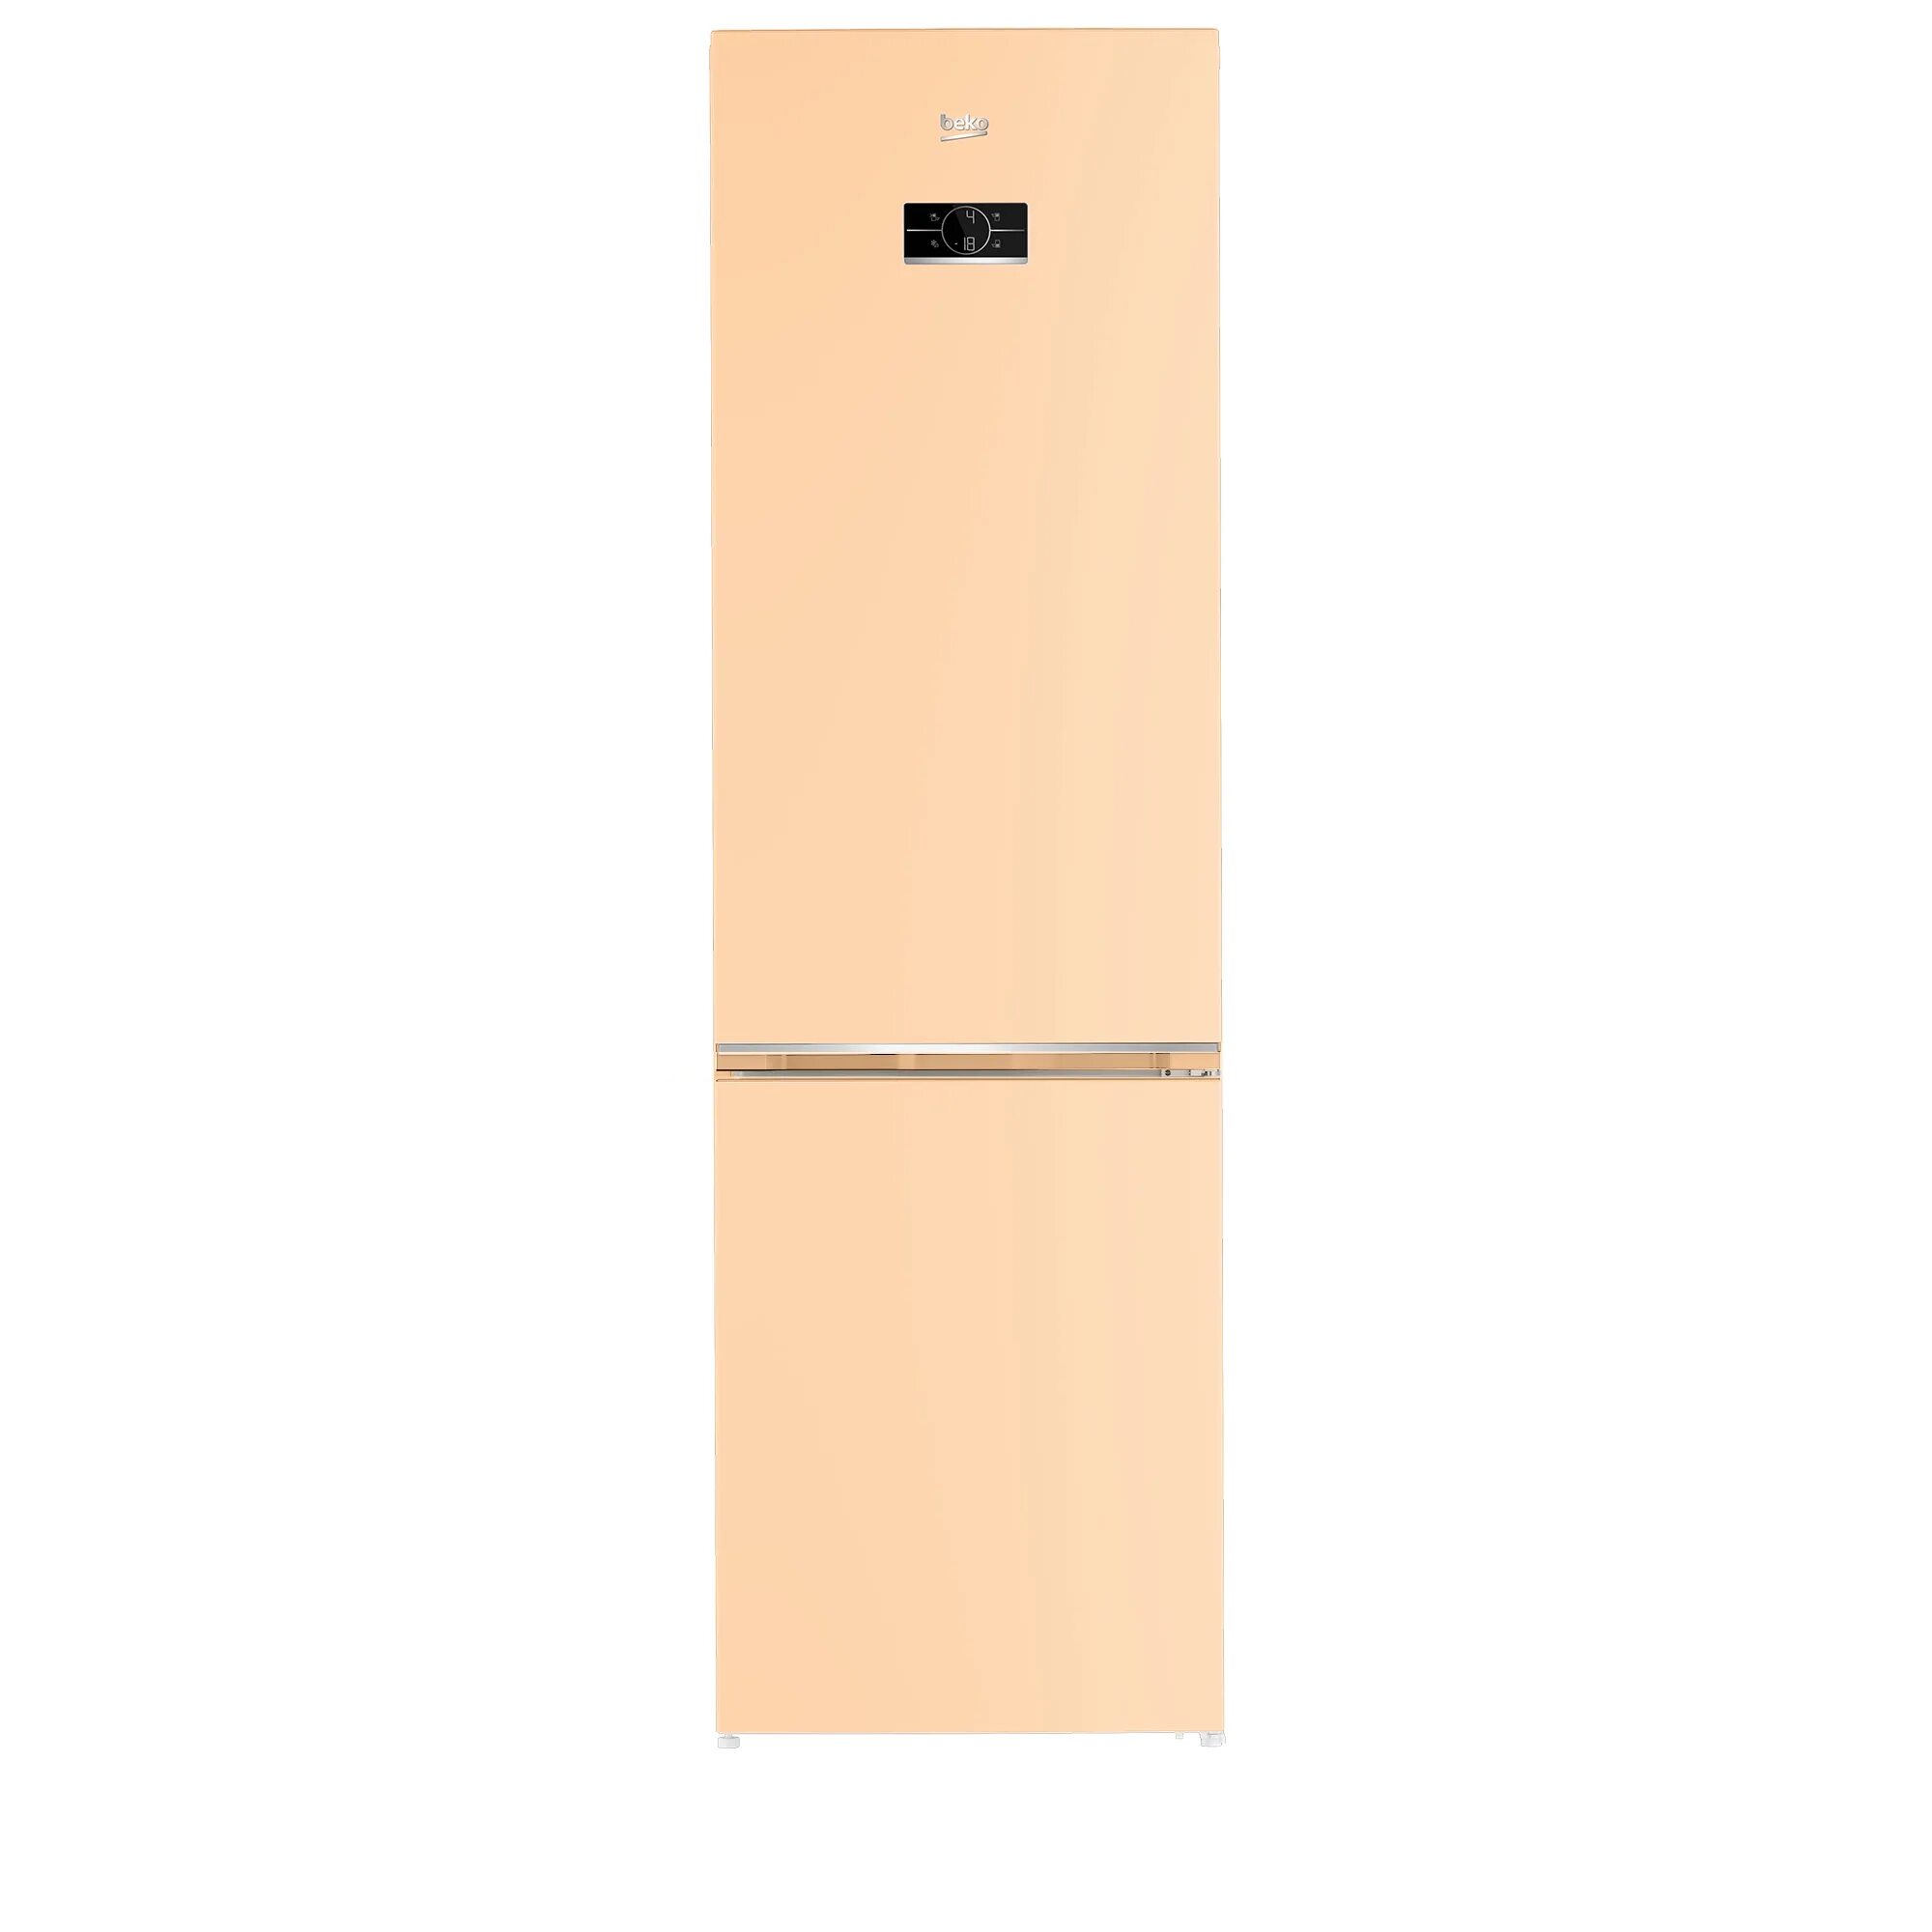 Узкие холодильники шириной до 50 см. Холодильник LG 509 cetl. Холодильник Jacky's Jr fv1860. Bosch kgn36nk21r. Холодильник Jacky's Jr fs227ms.